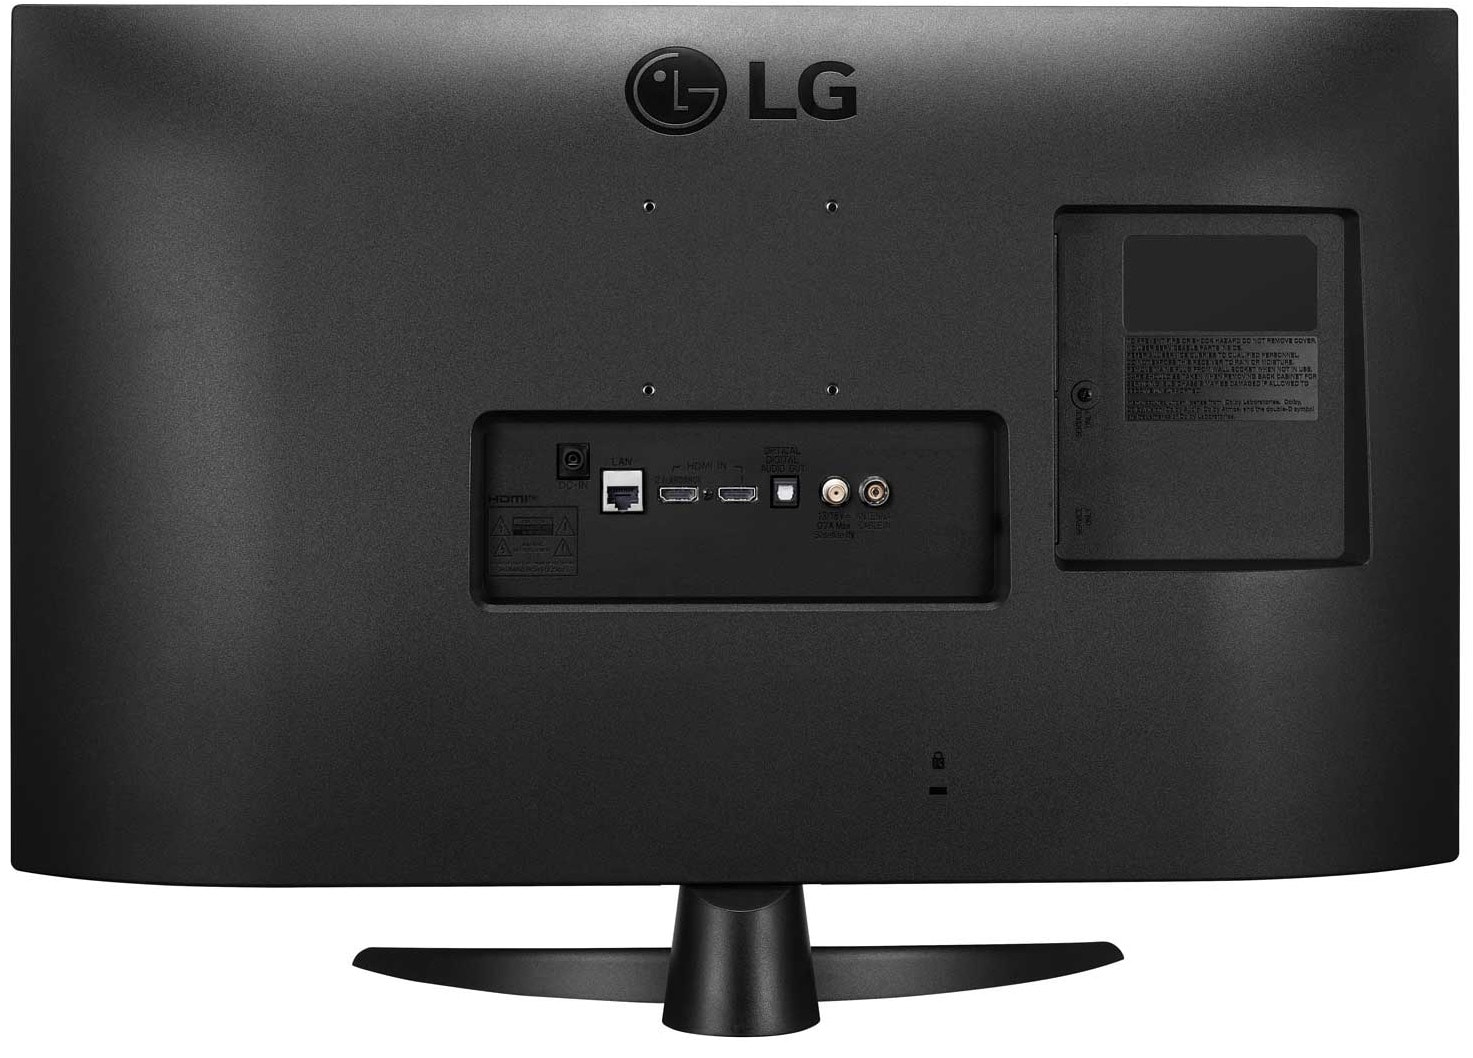 LG TV LED Full HD 69 cm  - 27TQ615S-PZ